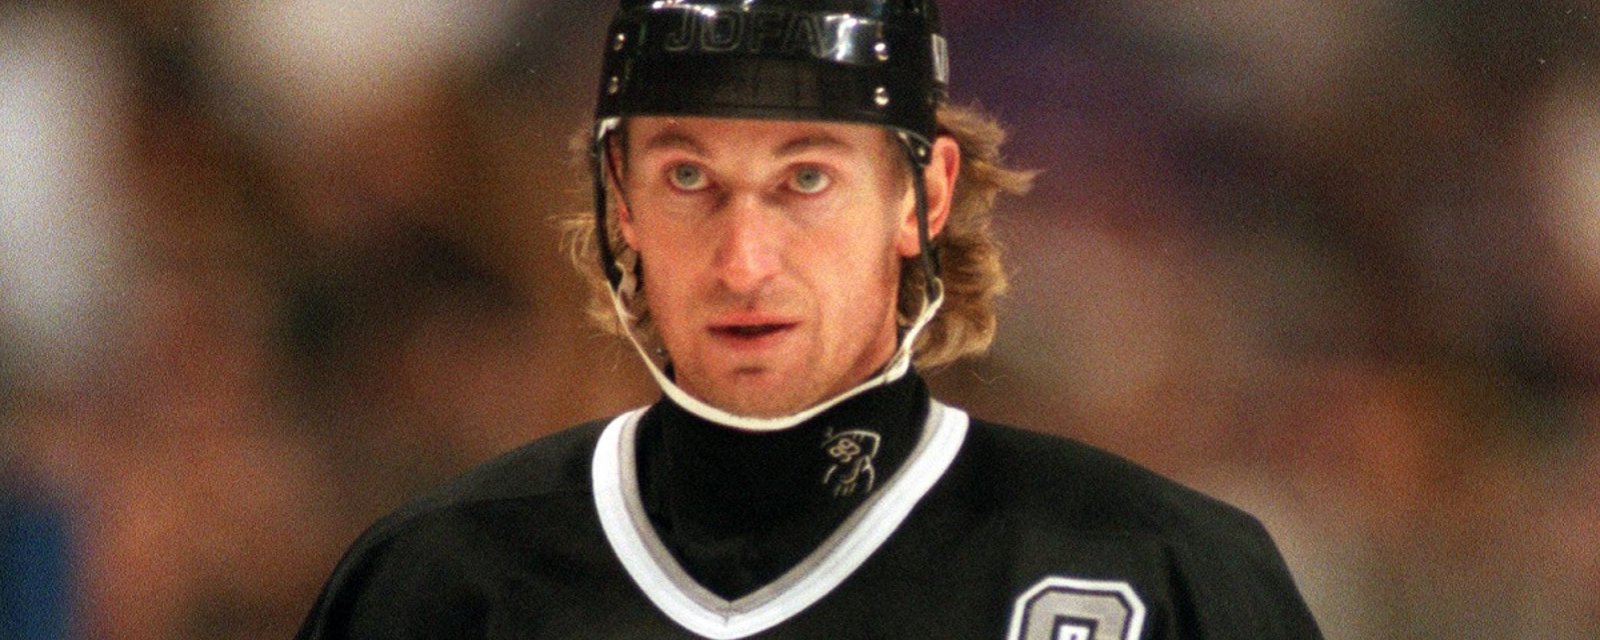 Wayne Gretzky de retour derrière le banc!